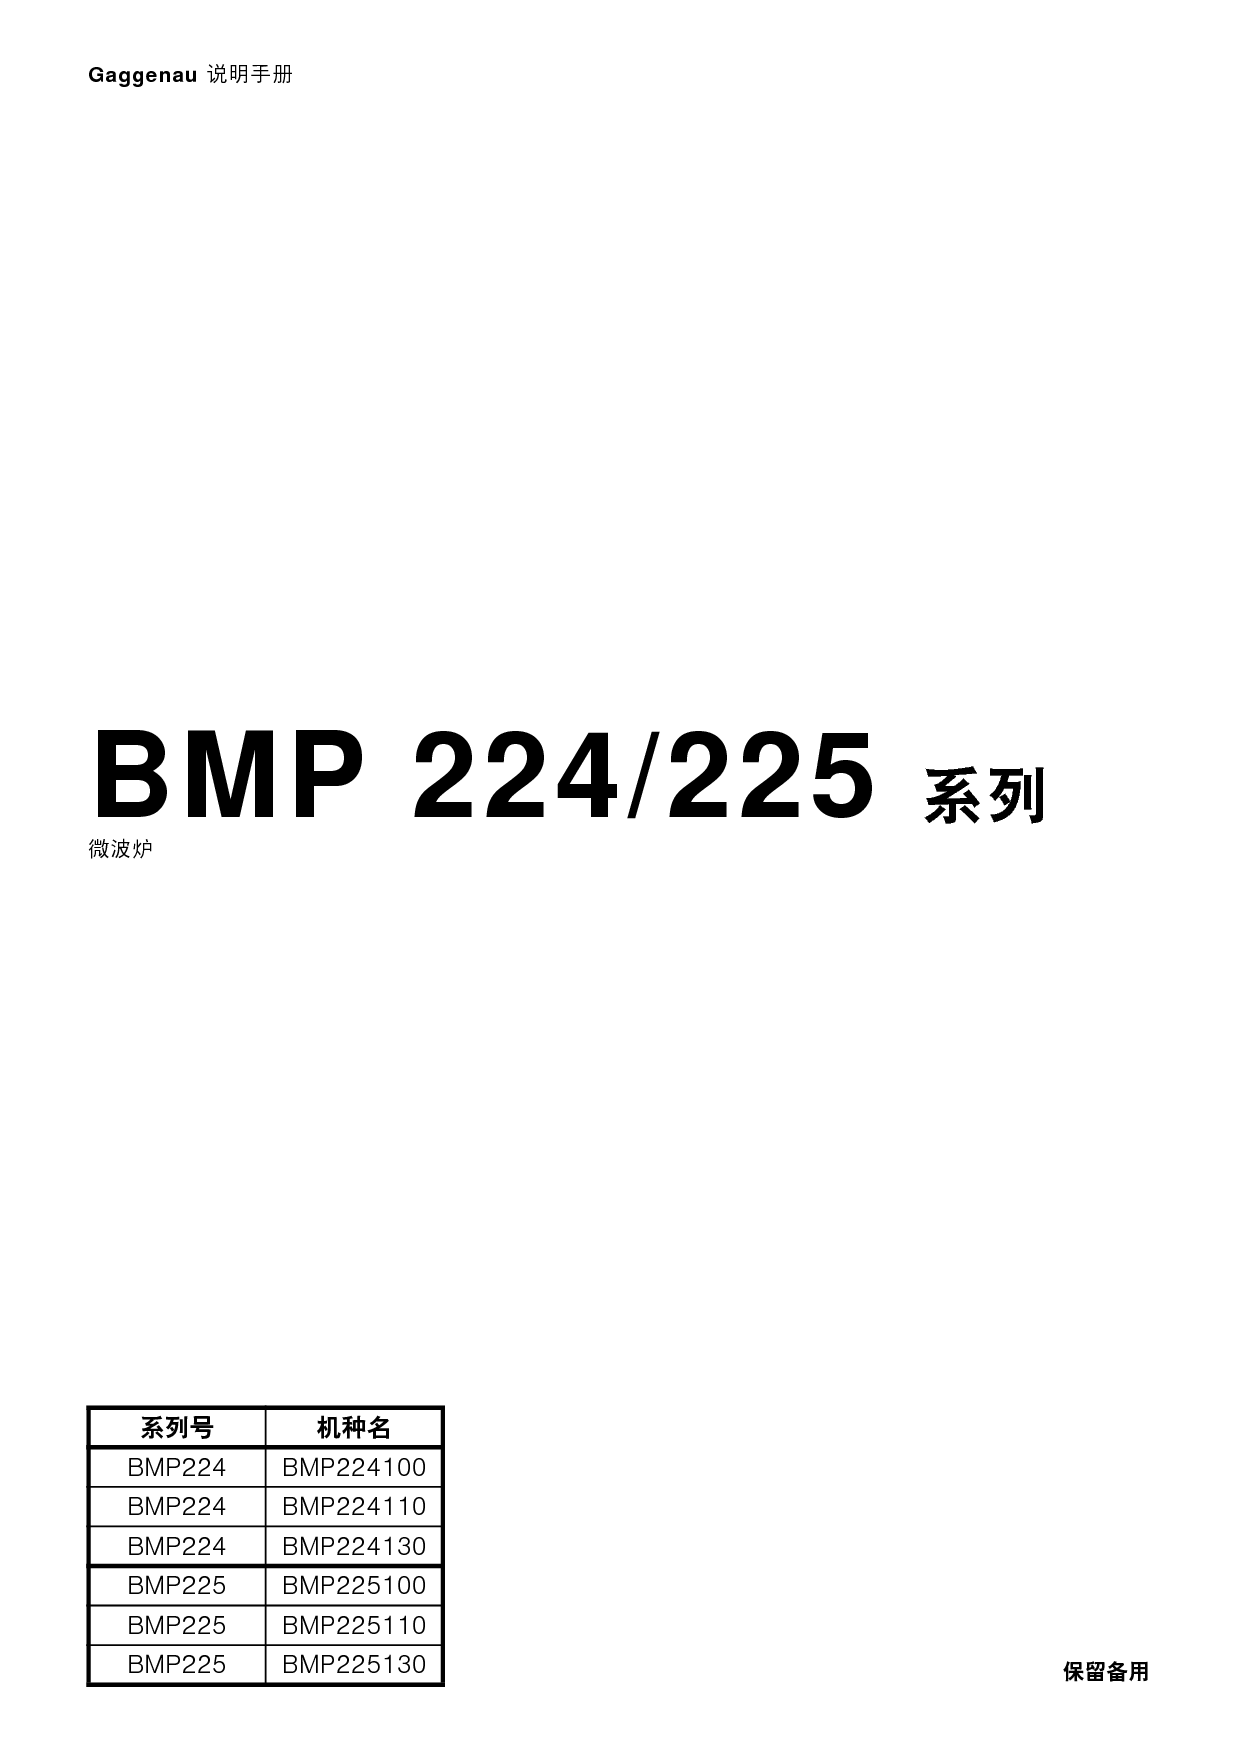 嘉格纳 Gaggenau BMP 224100 使用说明书 封面